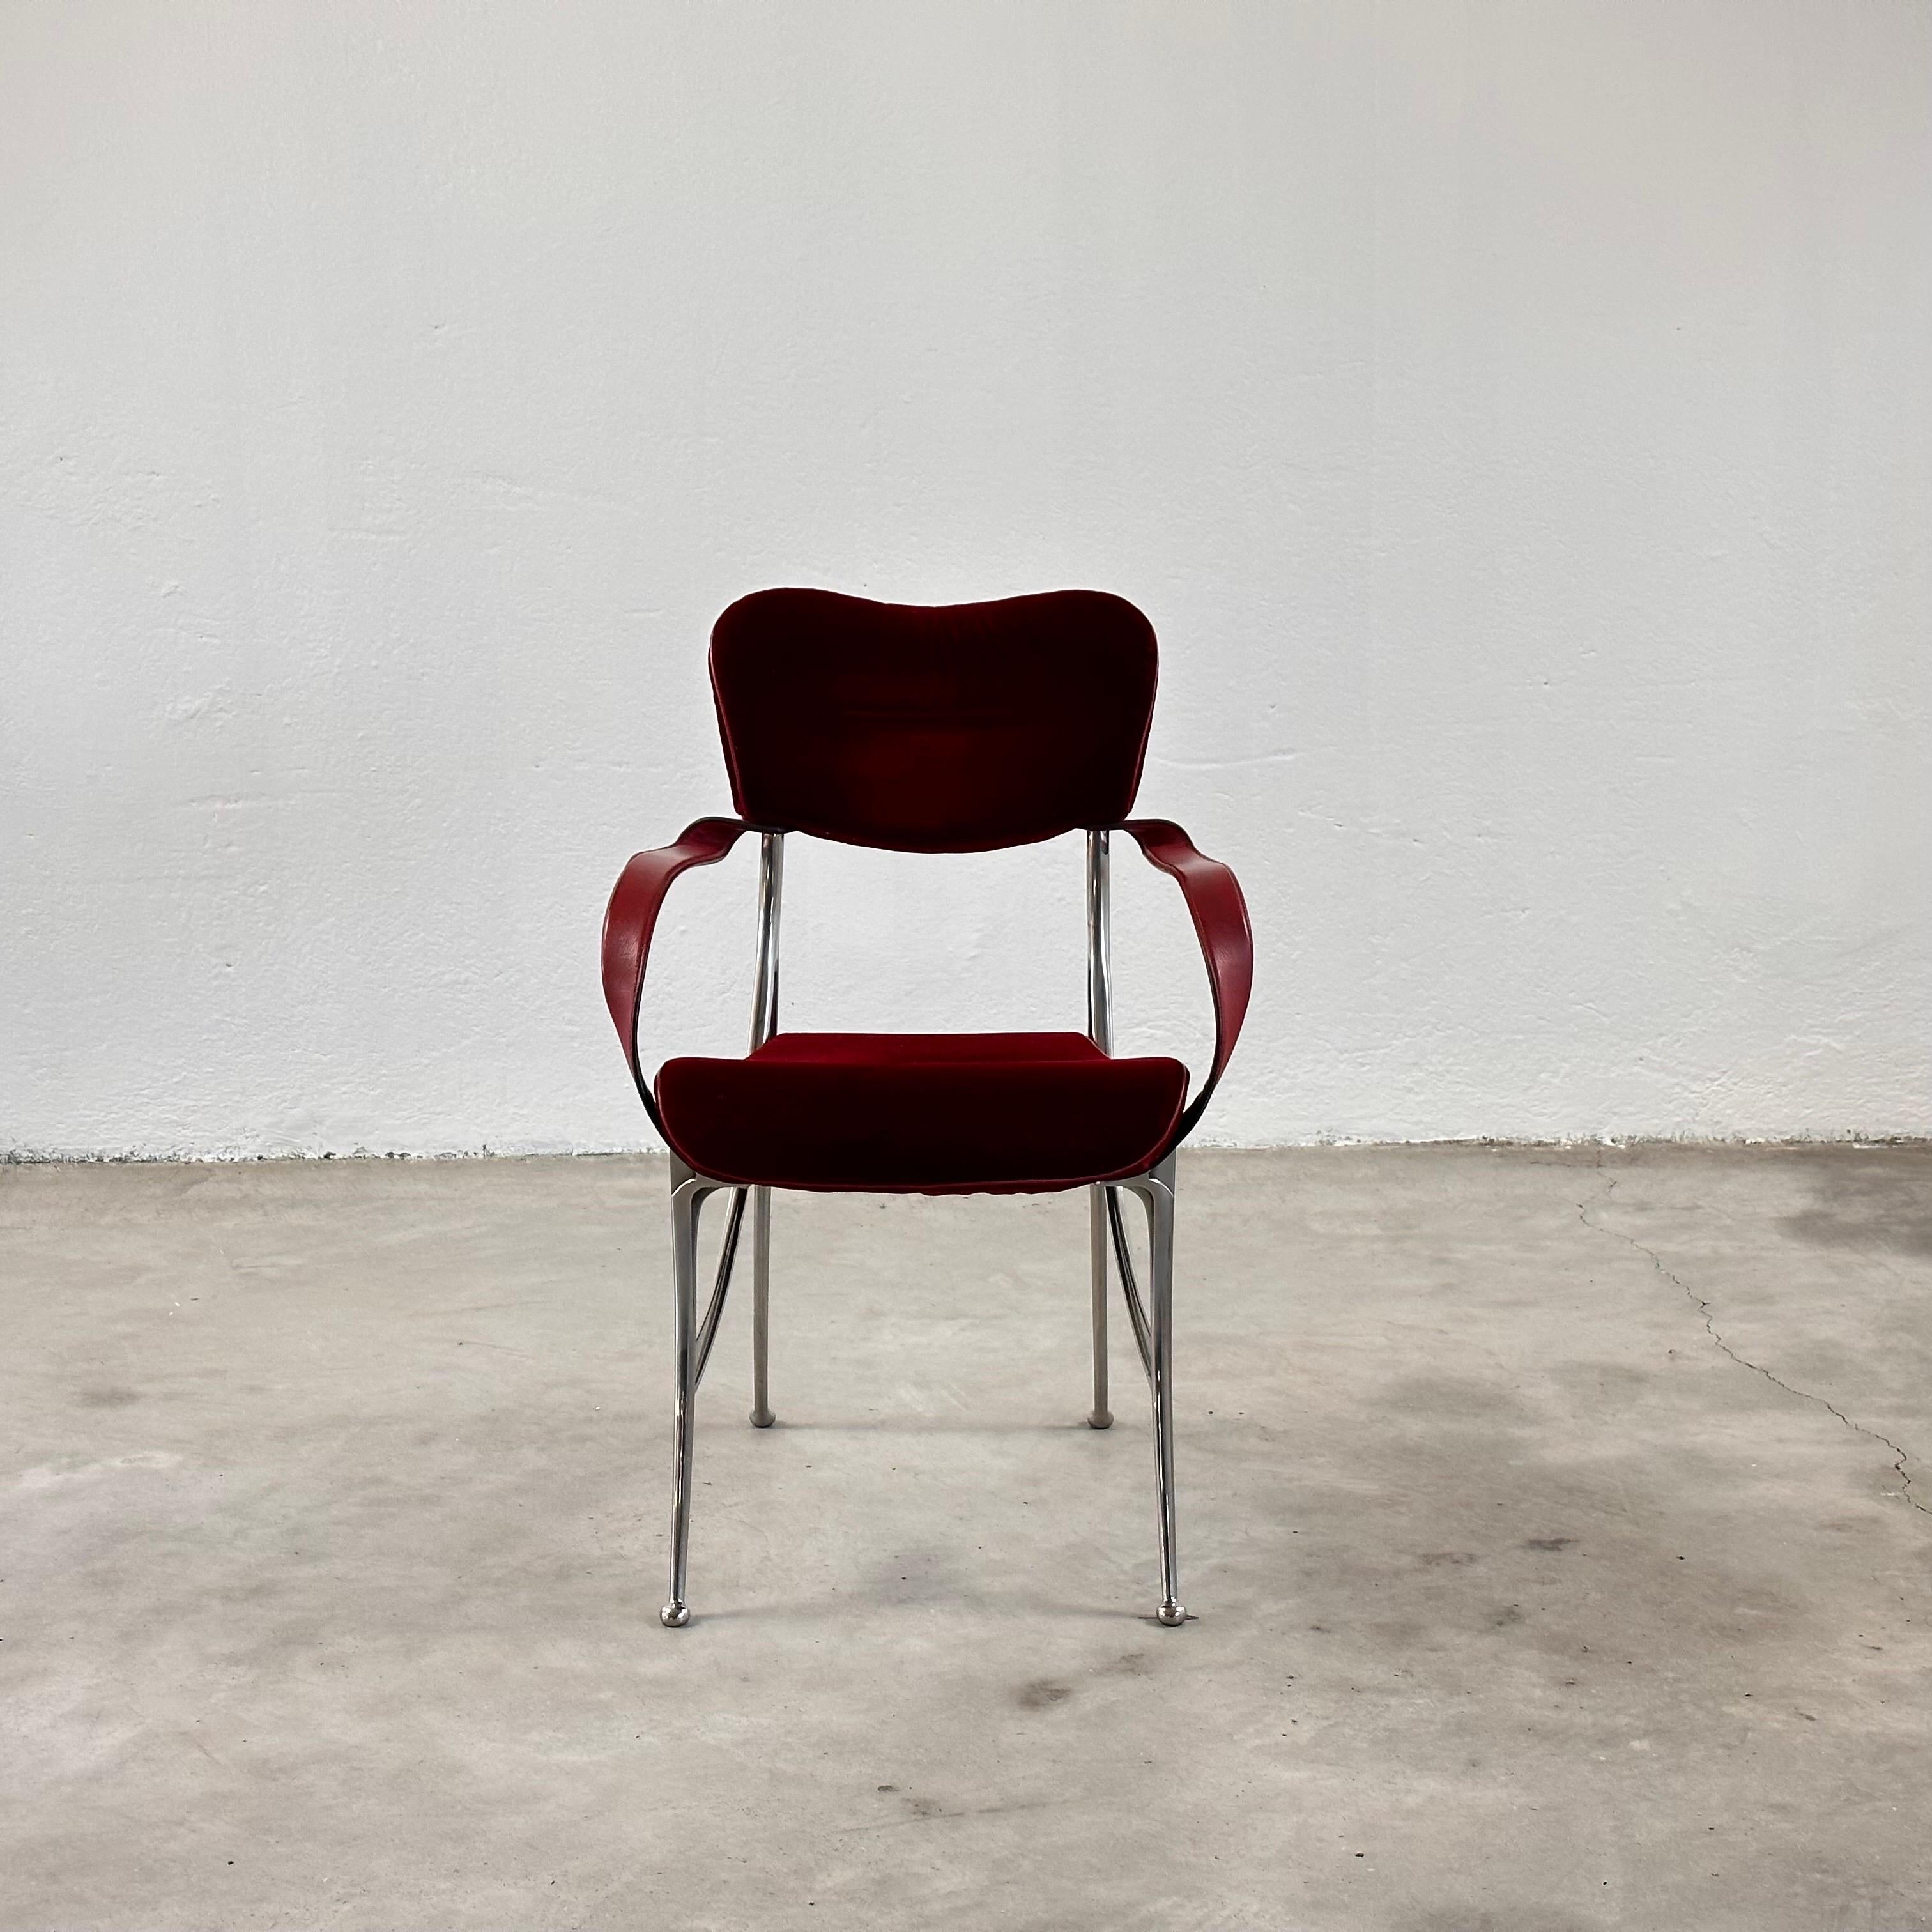 Diese Stühle sind eine harmonische Mischung aus Form und Funktion und verkörpern die unverwechselbare Designphilosophie von Tusquets. Sie verbinden organische Formen mit luxuriösen MATERIALEN und schaffen so ein Highlight, das Eleganz und Stil